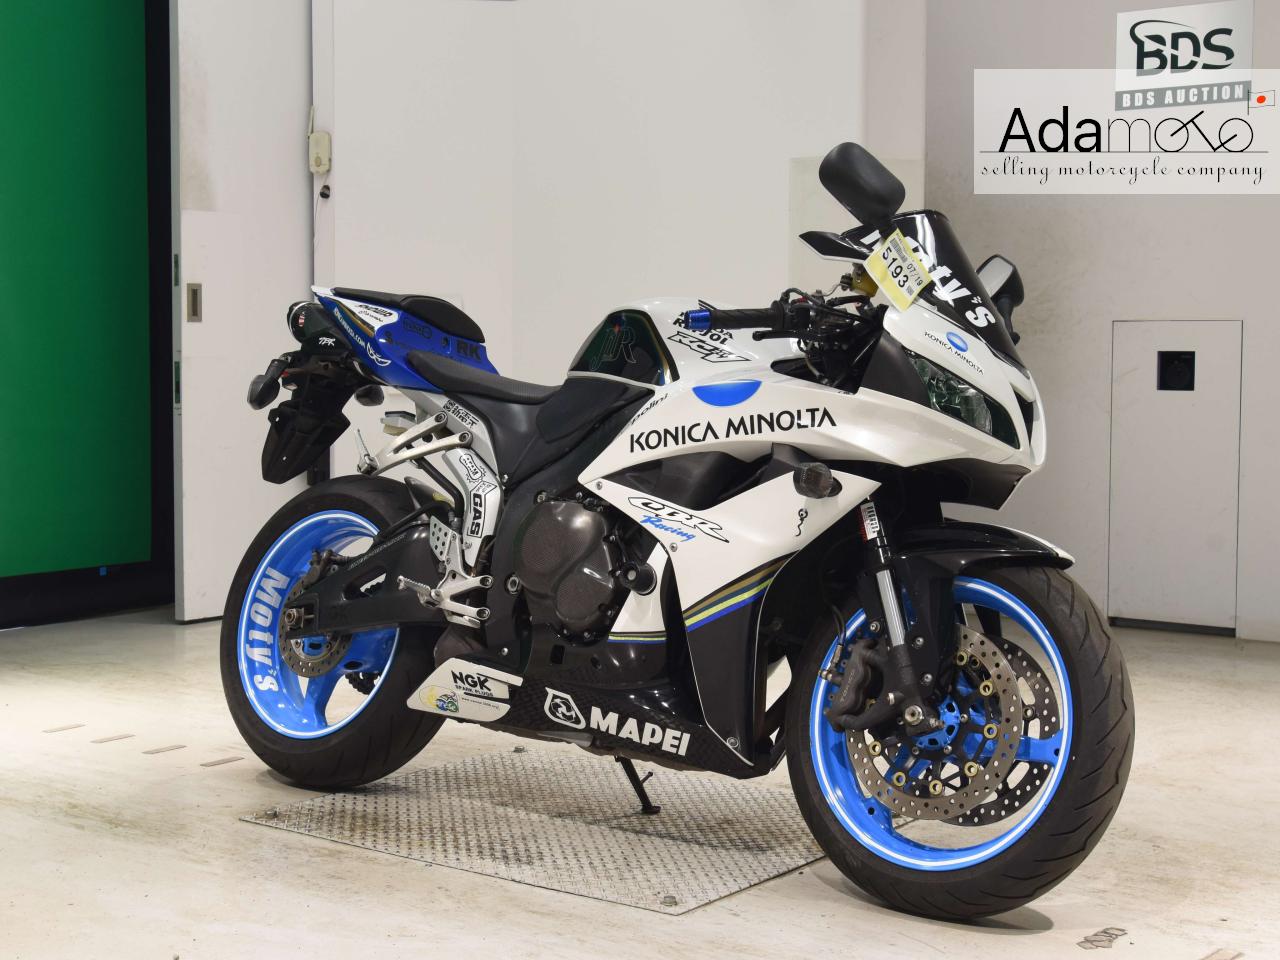 Honda CBR600RR 3 - Adamoto - Motorcycles from Japan